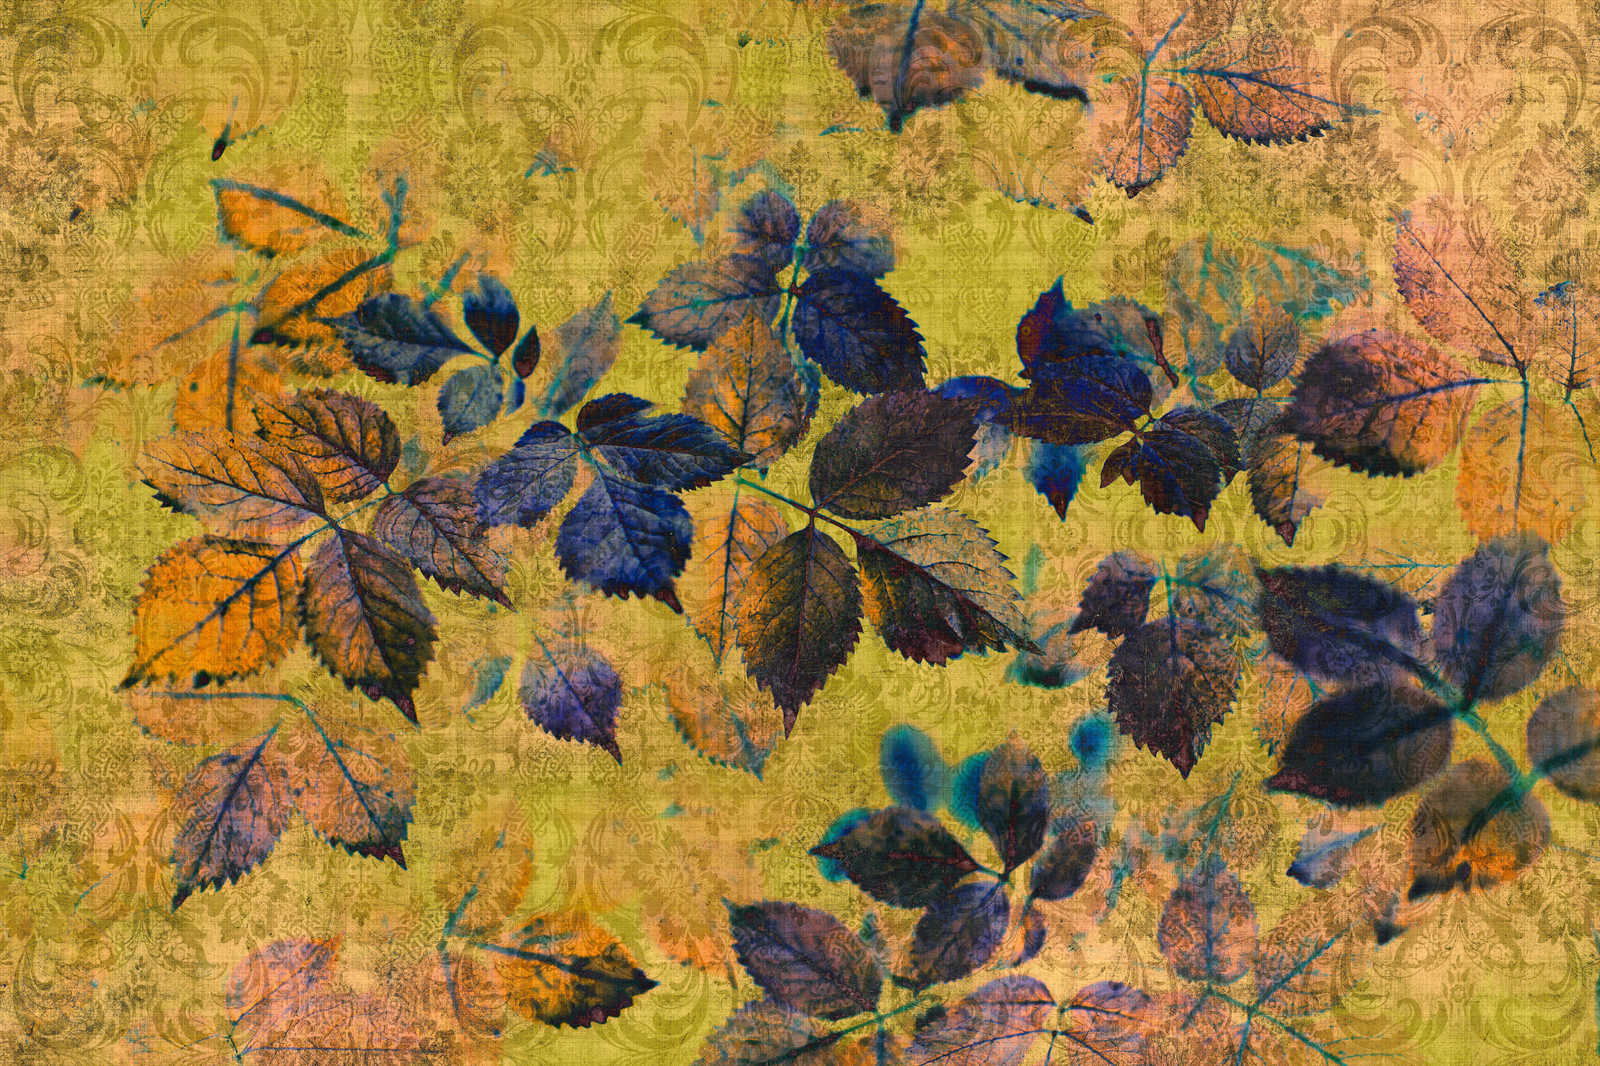             Indian summer 1 - Leinwandbild mit Blättern und Ornamenten in naturleinen Struktur – 0,90 m x 0,60 m
        